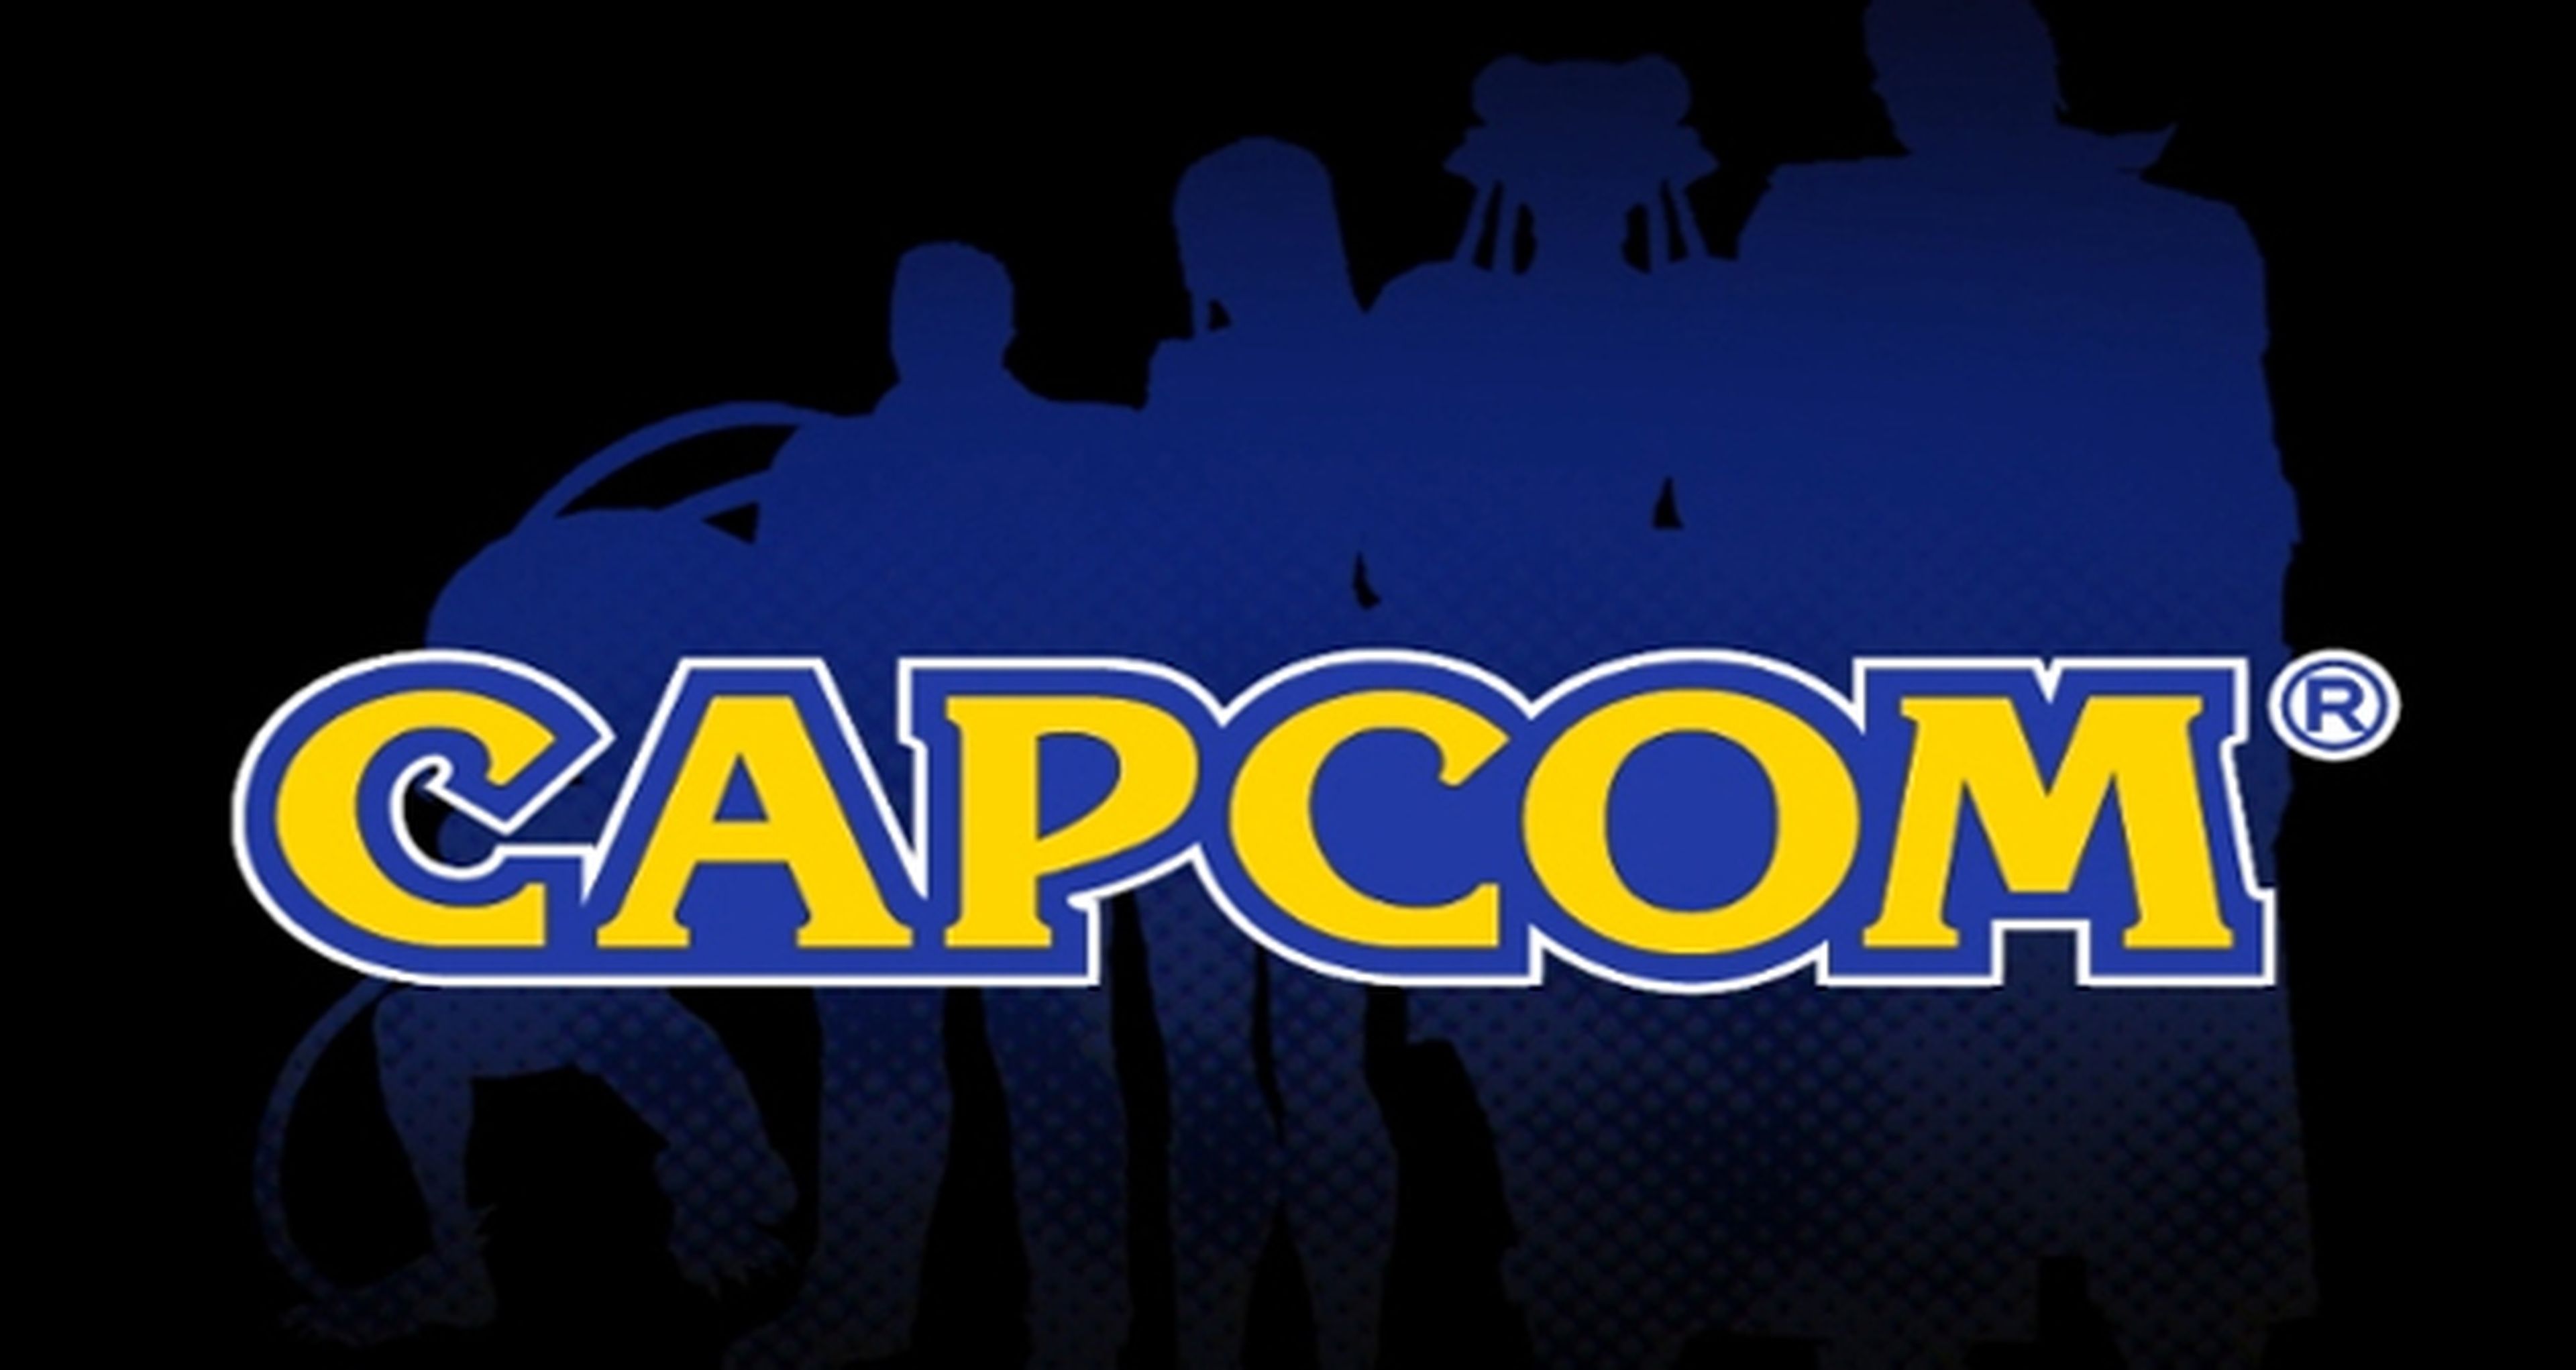 Capcom anunciará un título importante en enero